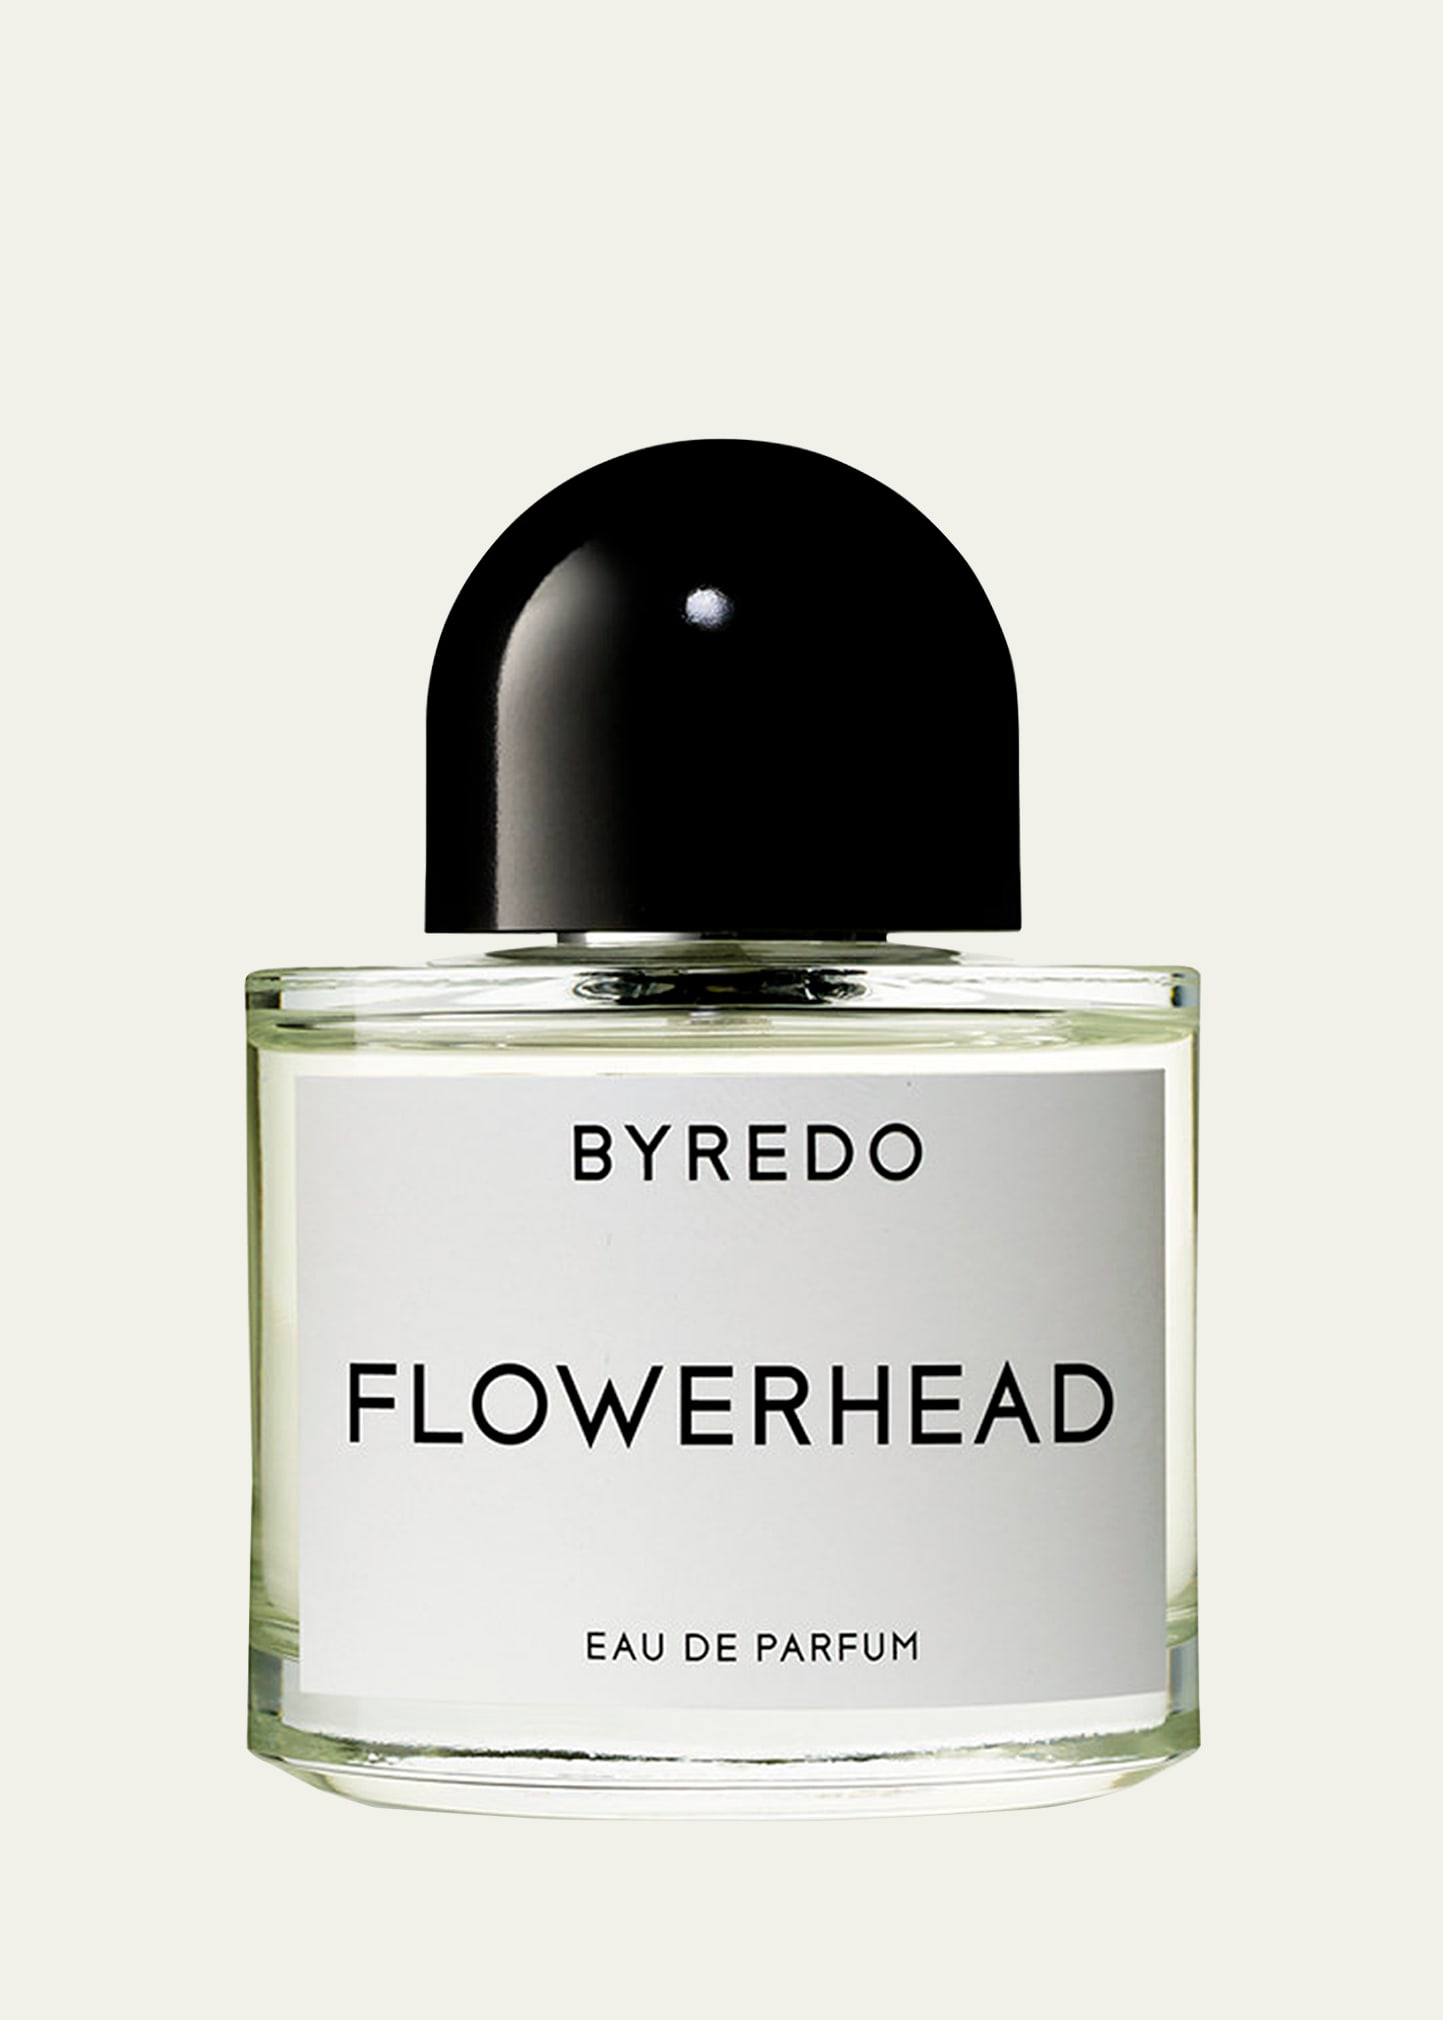 Flowerhead Eau de Parfum, 1.7 oz.